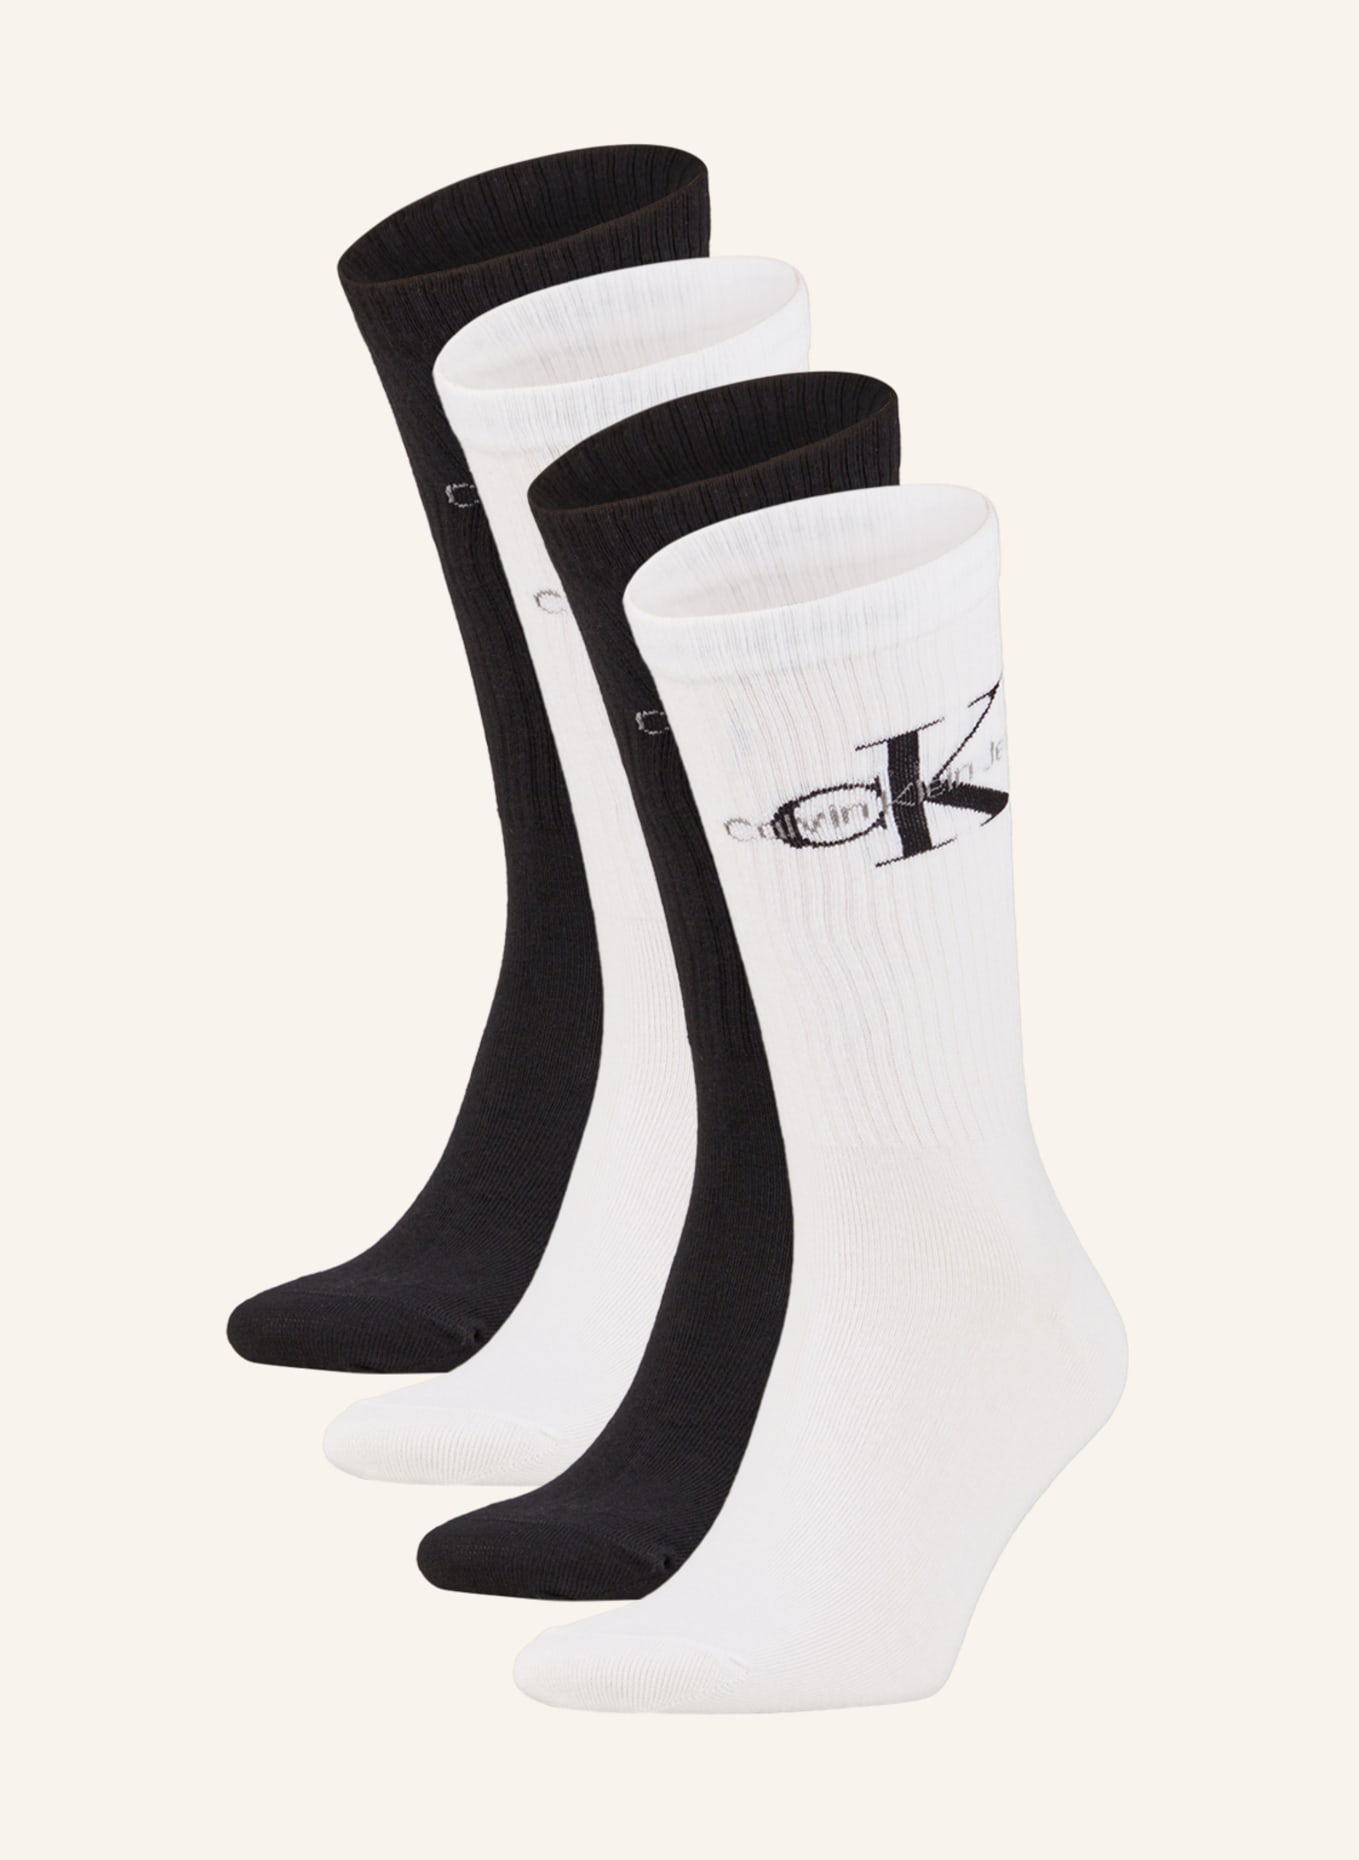 Calvin Klein 4er-Pack Socken mit Geschenkbox, Farbe: 001 black combo (Bild 1)